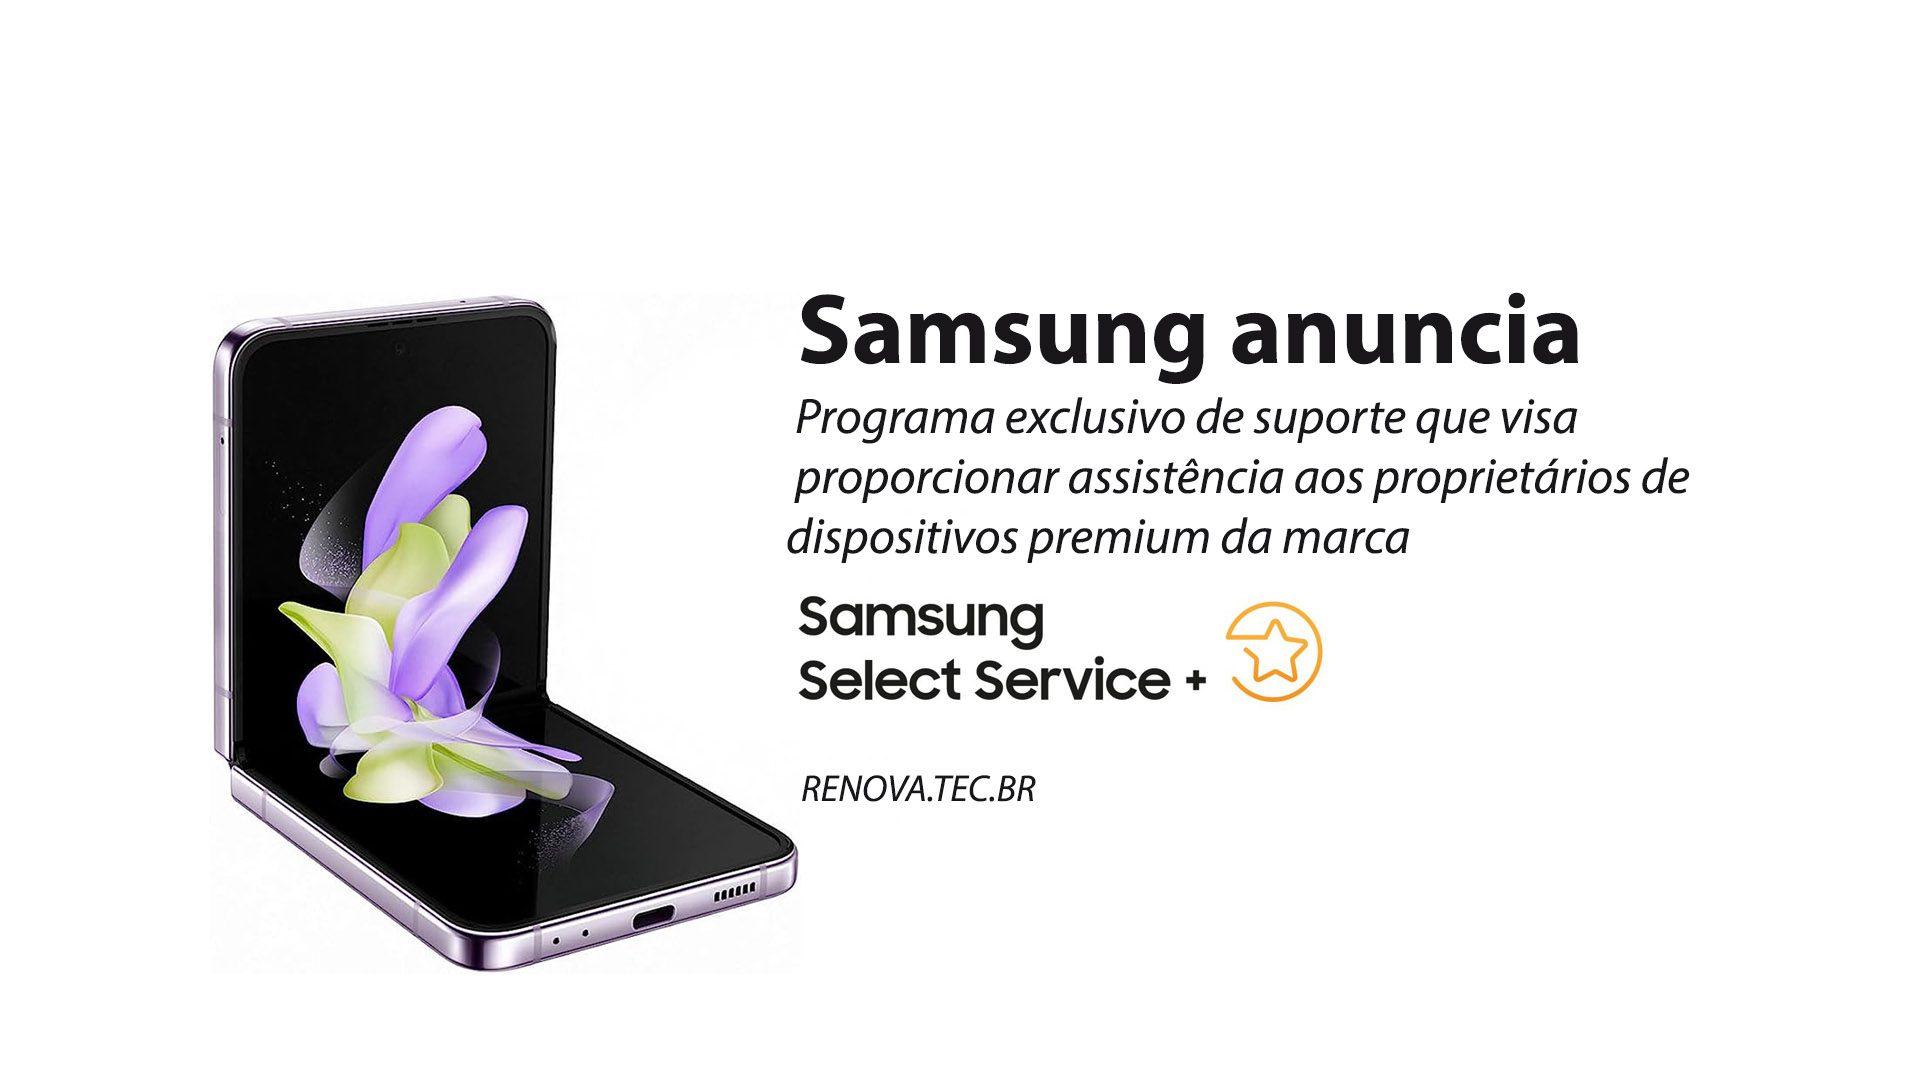 Select+ Samsung o programa exclusivo de suporte